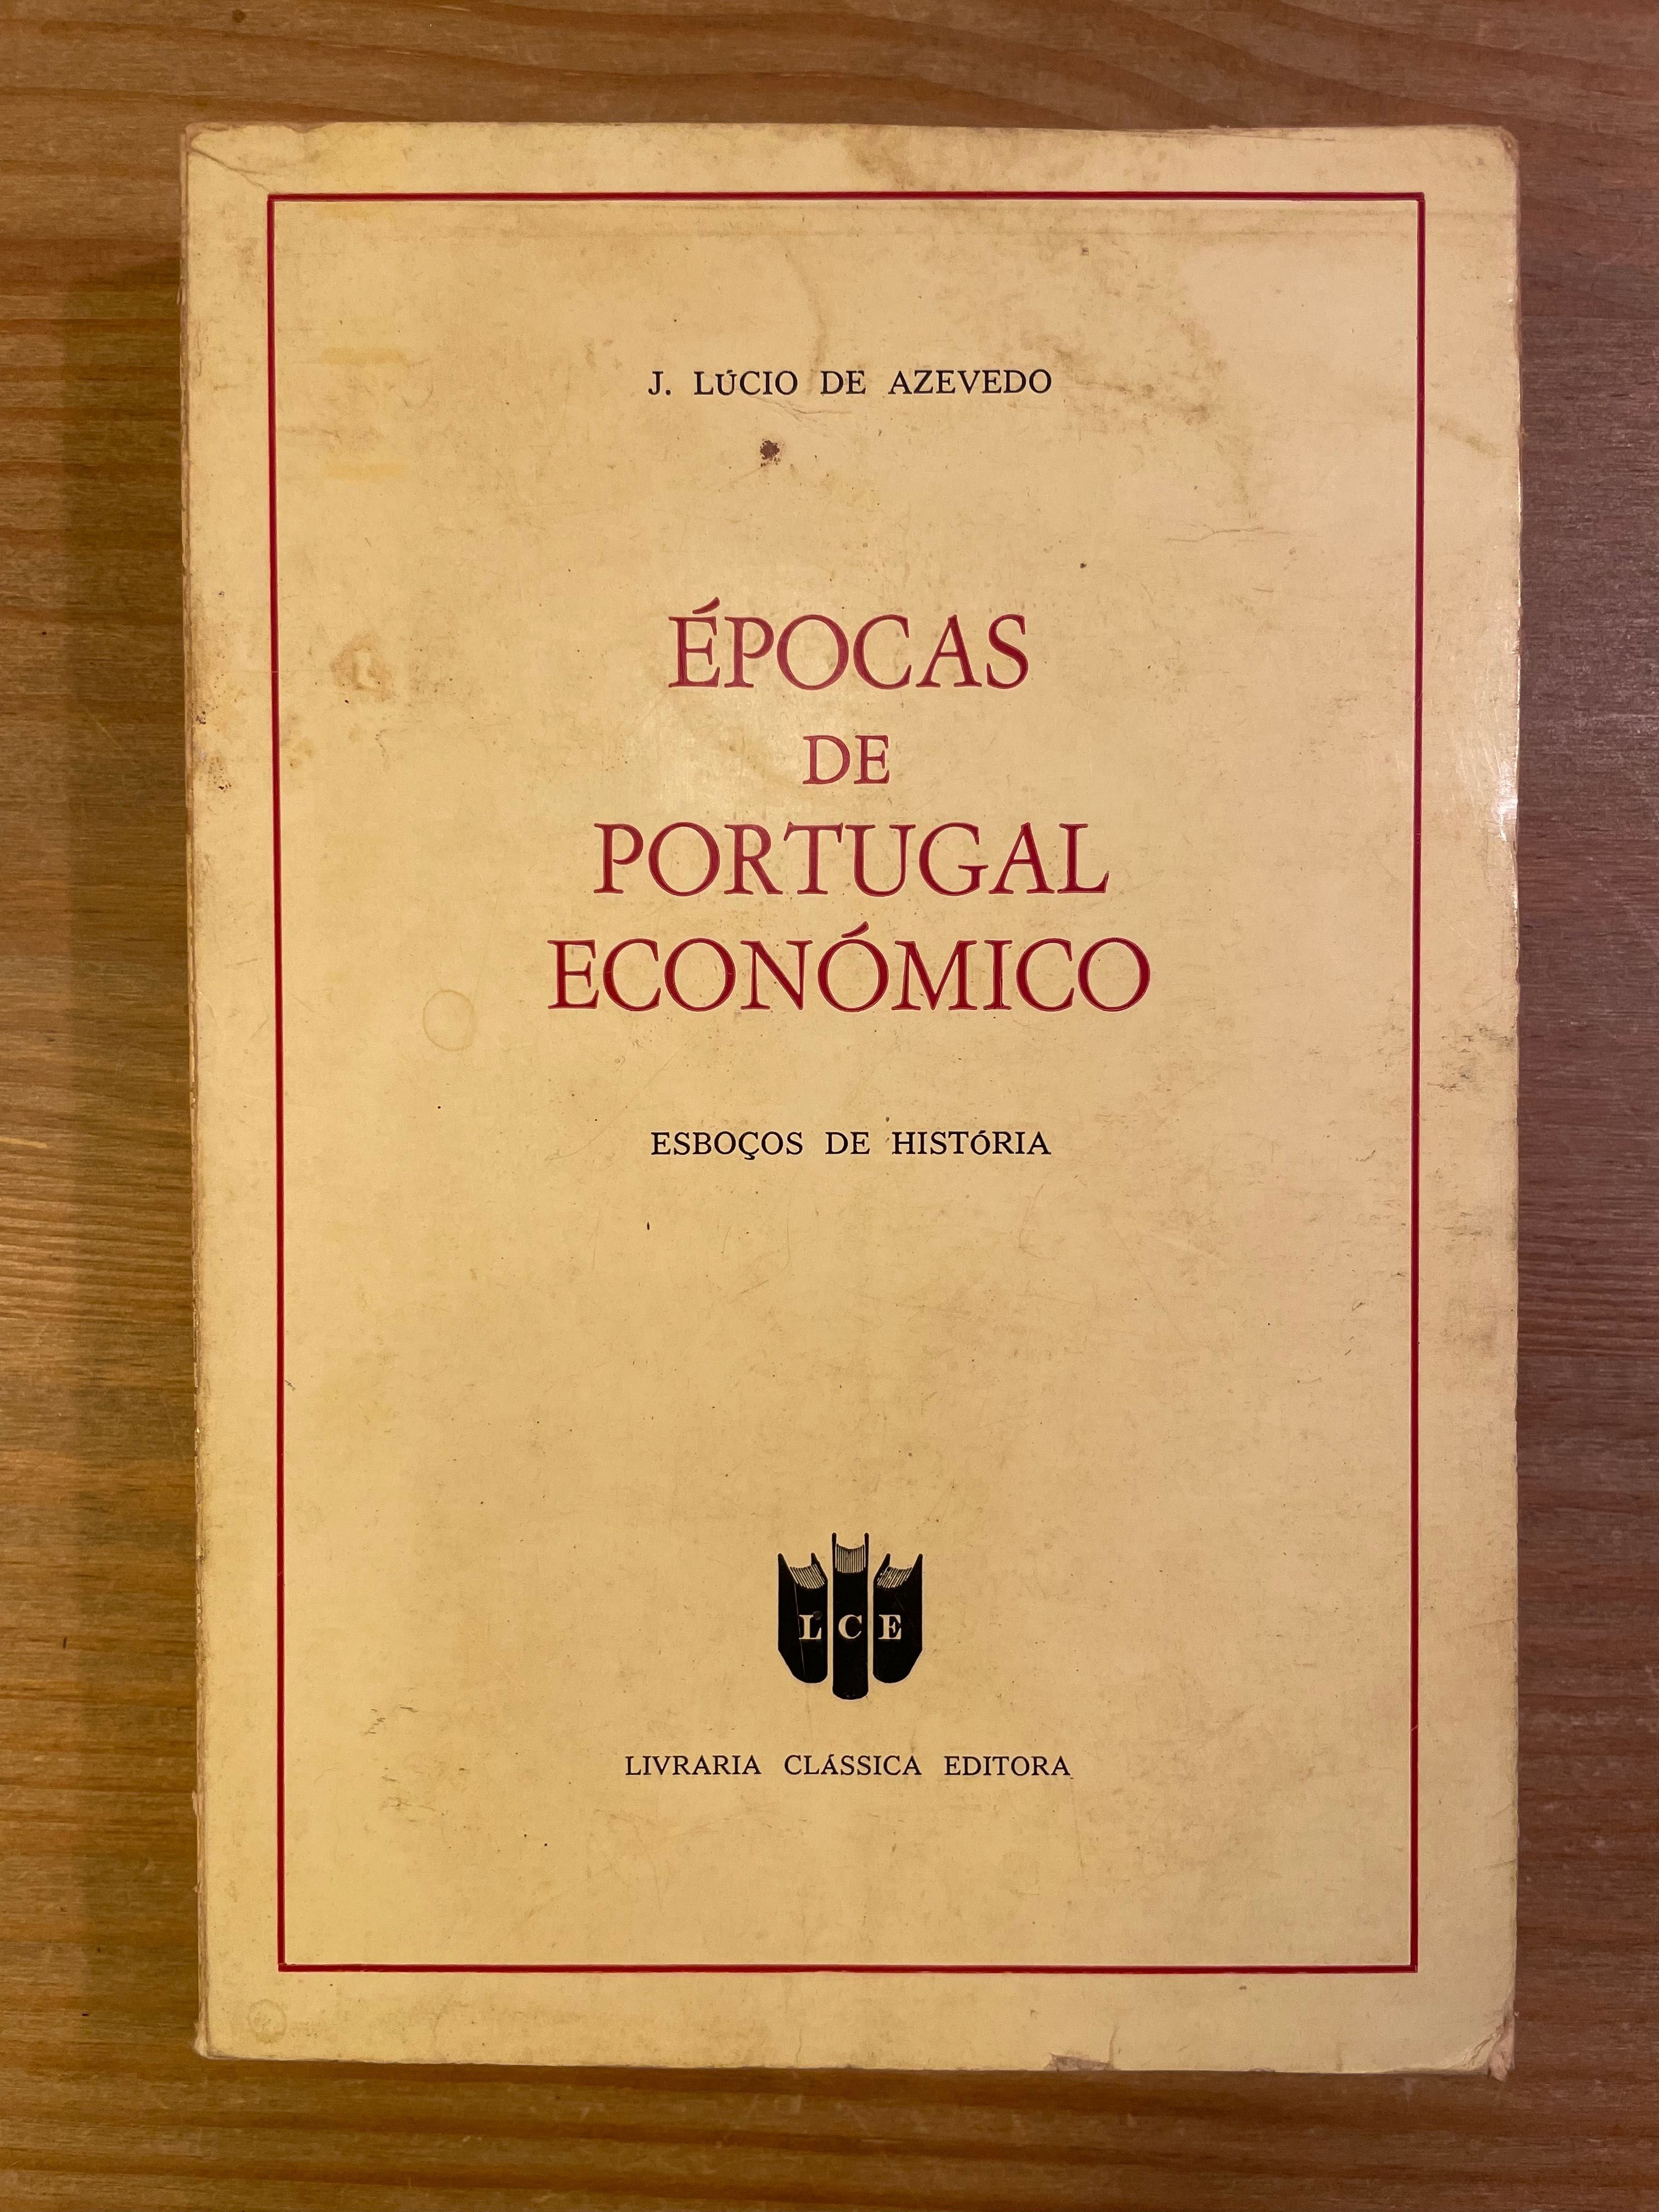 Épocas de Portugal Económico - J. Lucio de Azevedo (portes grátis)